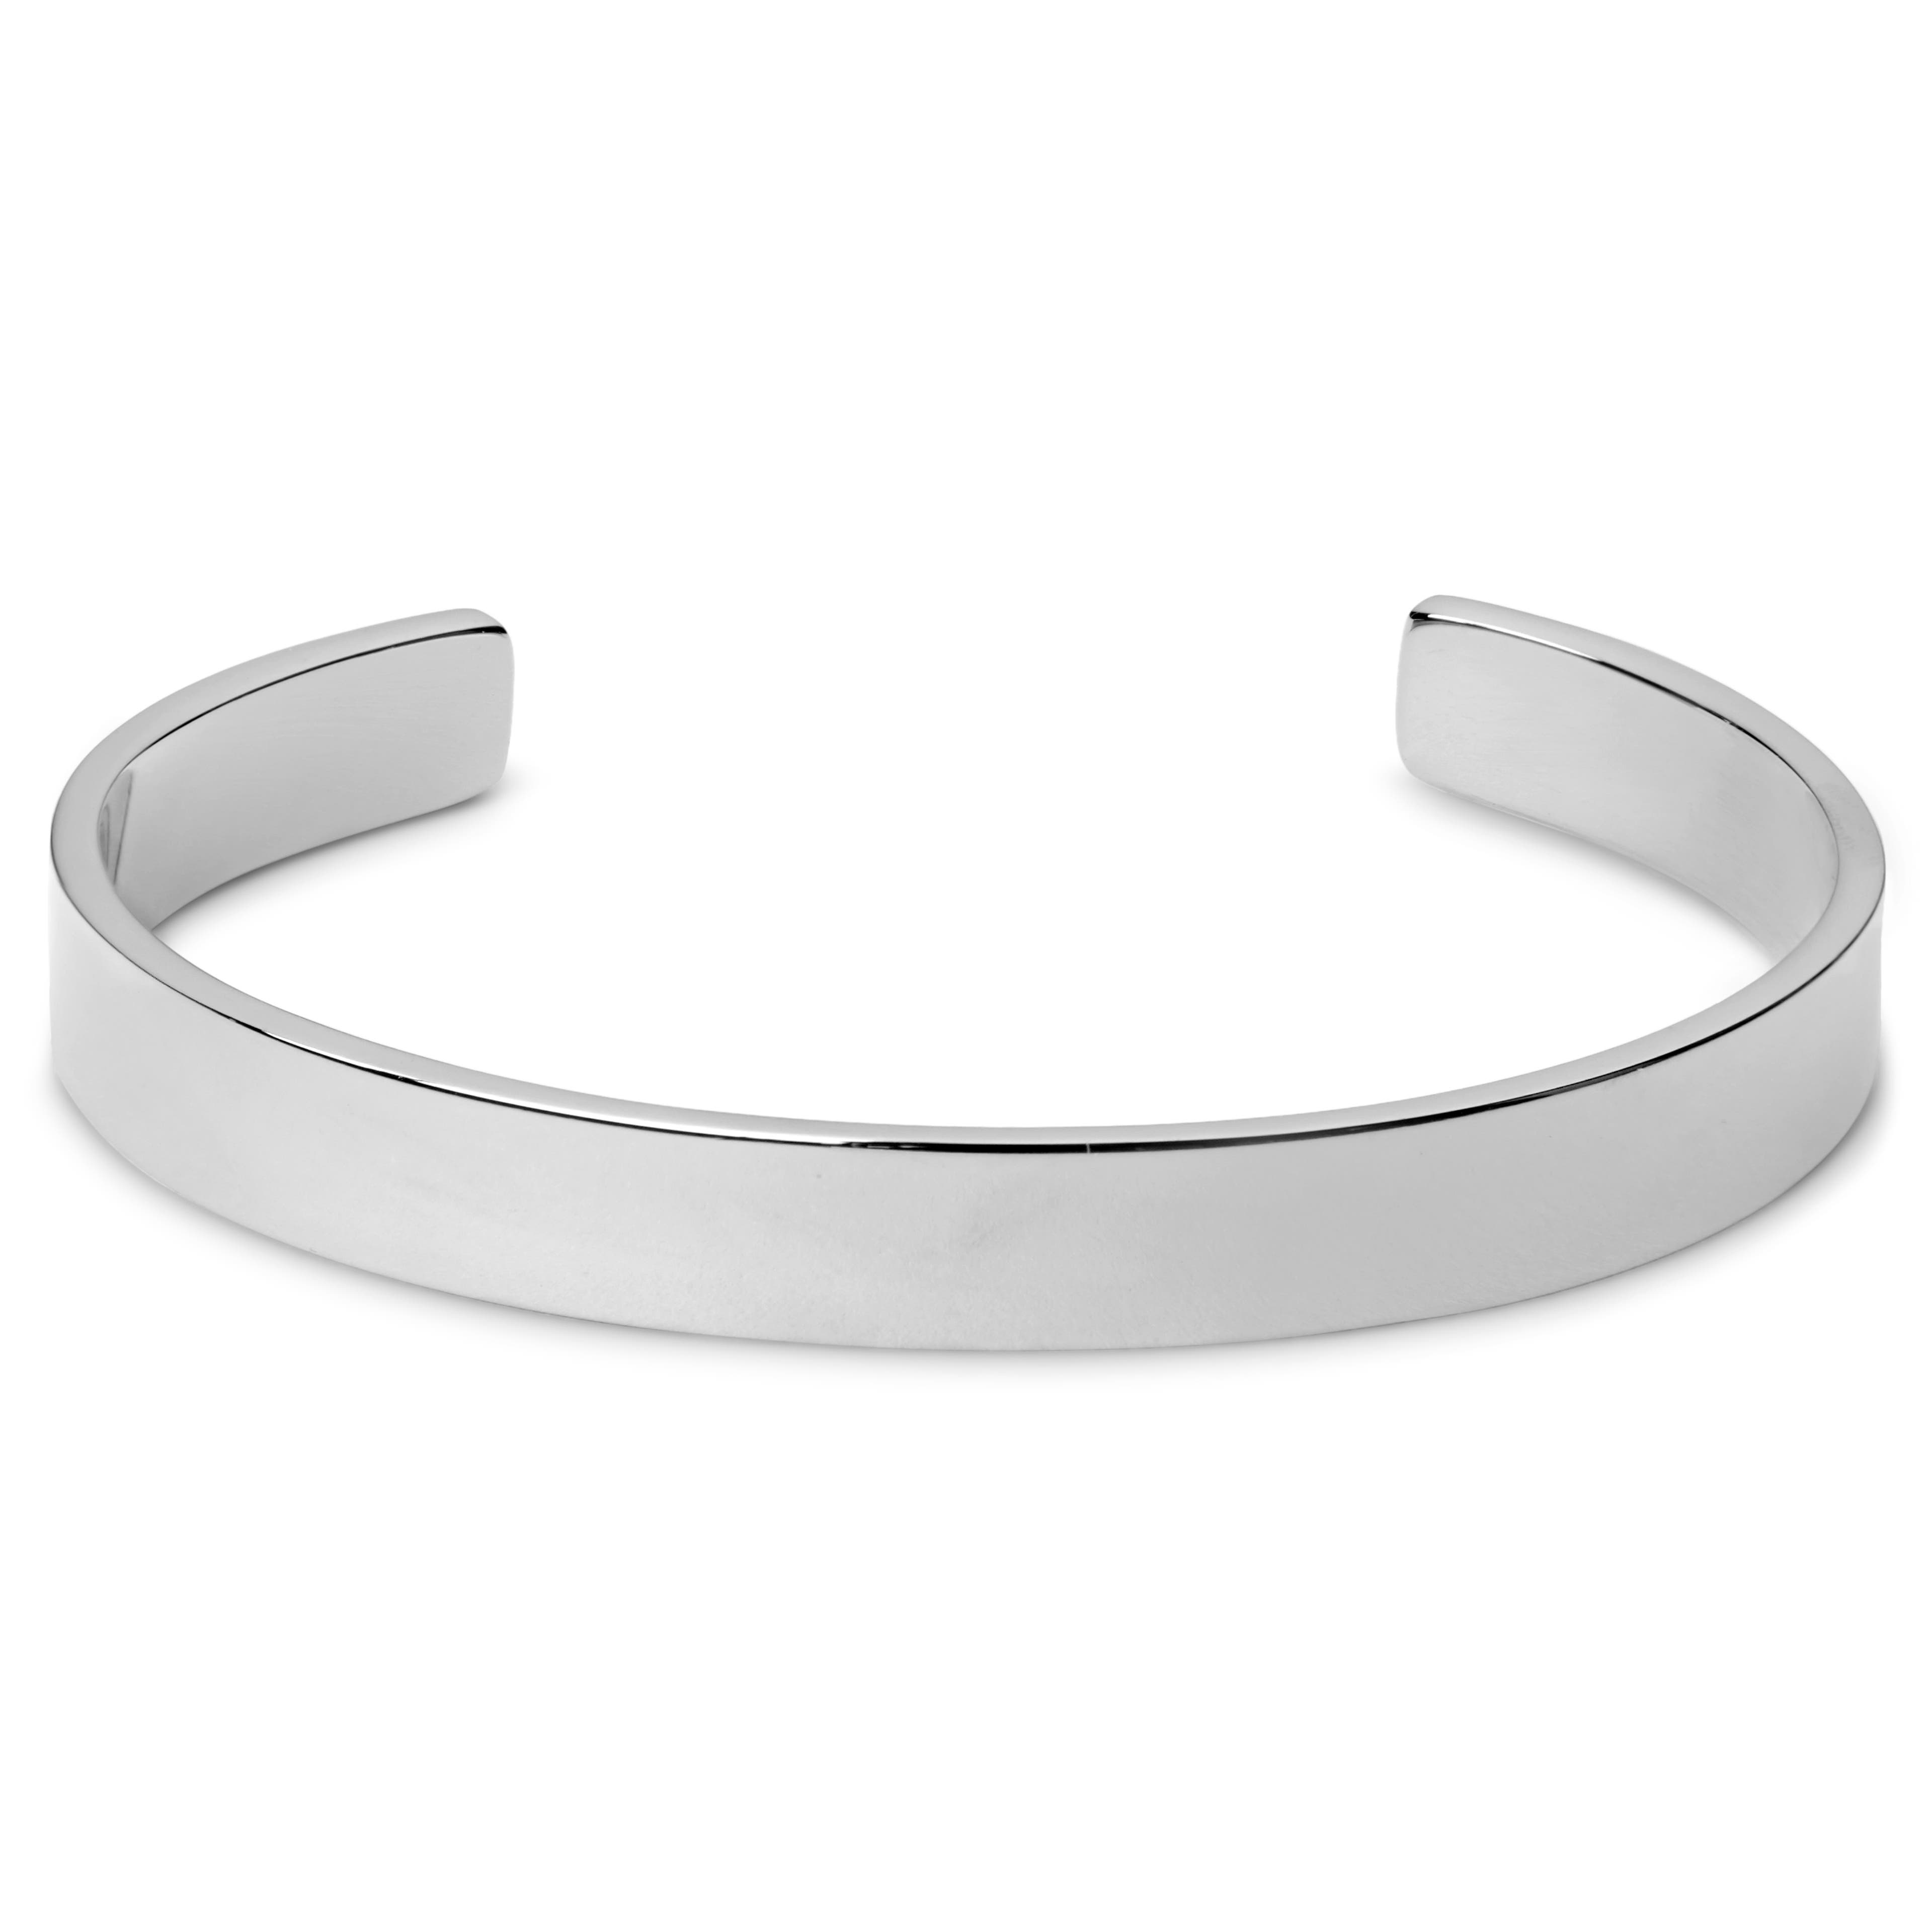 Silver-Tone Cuff Bracelet